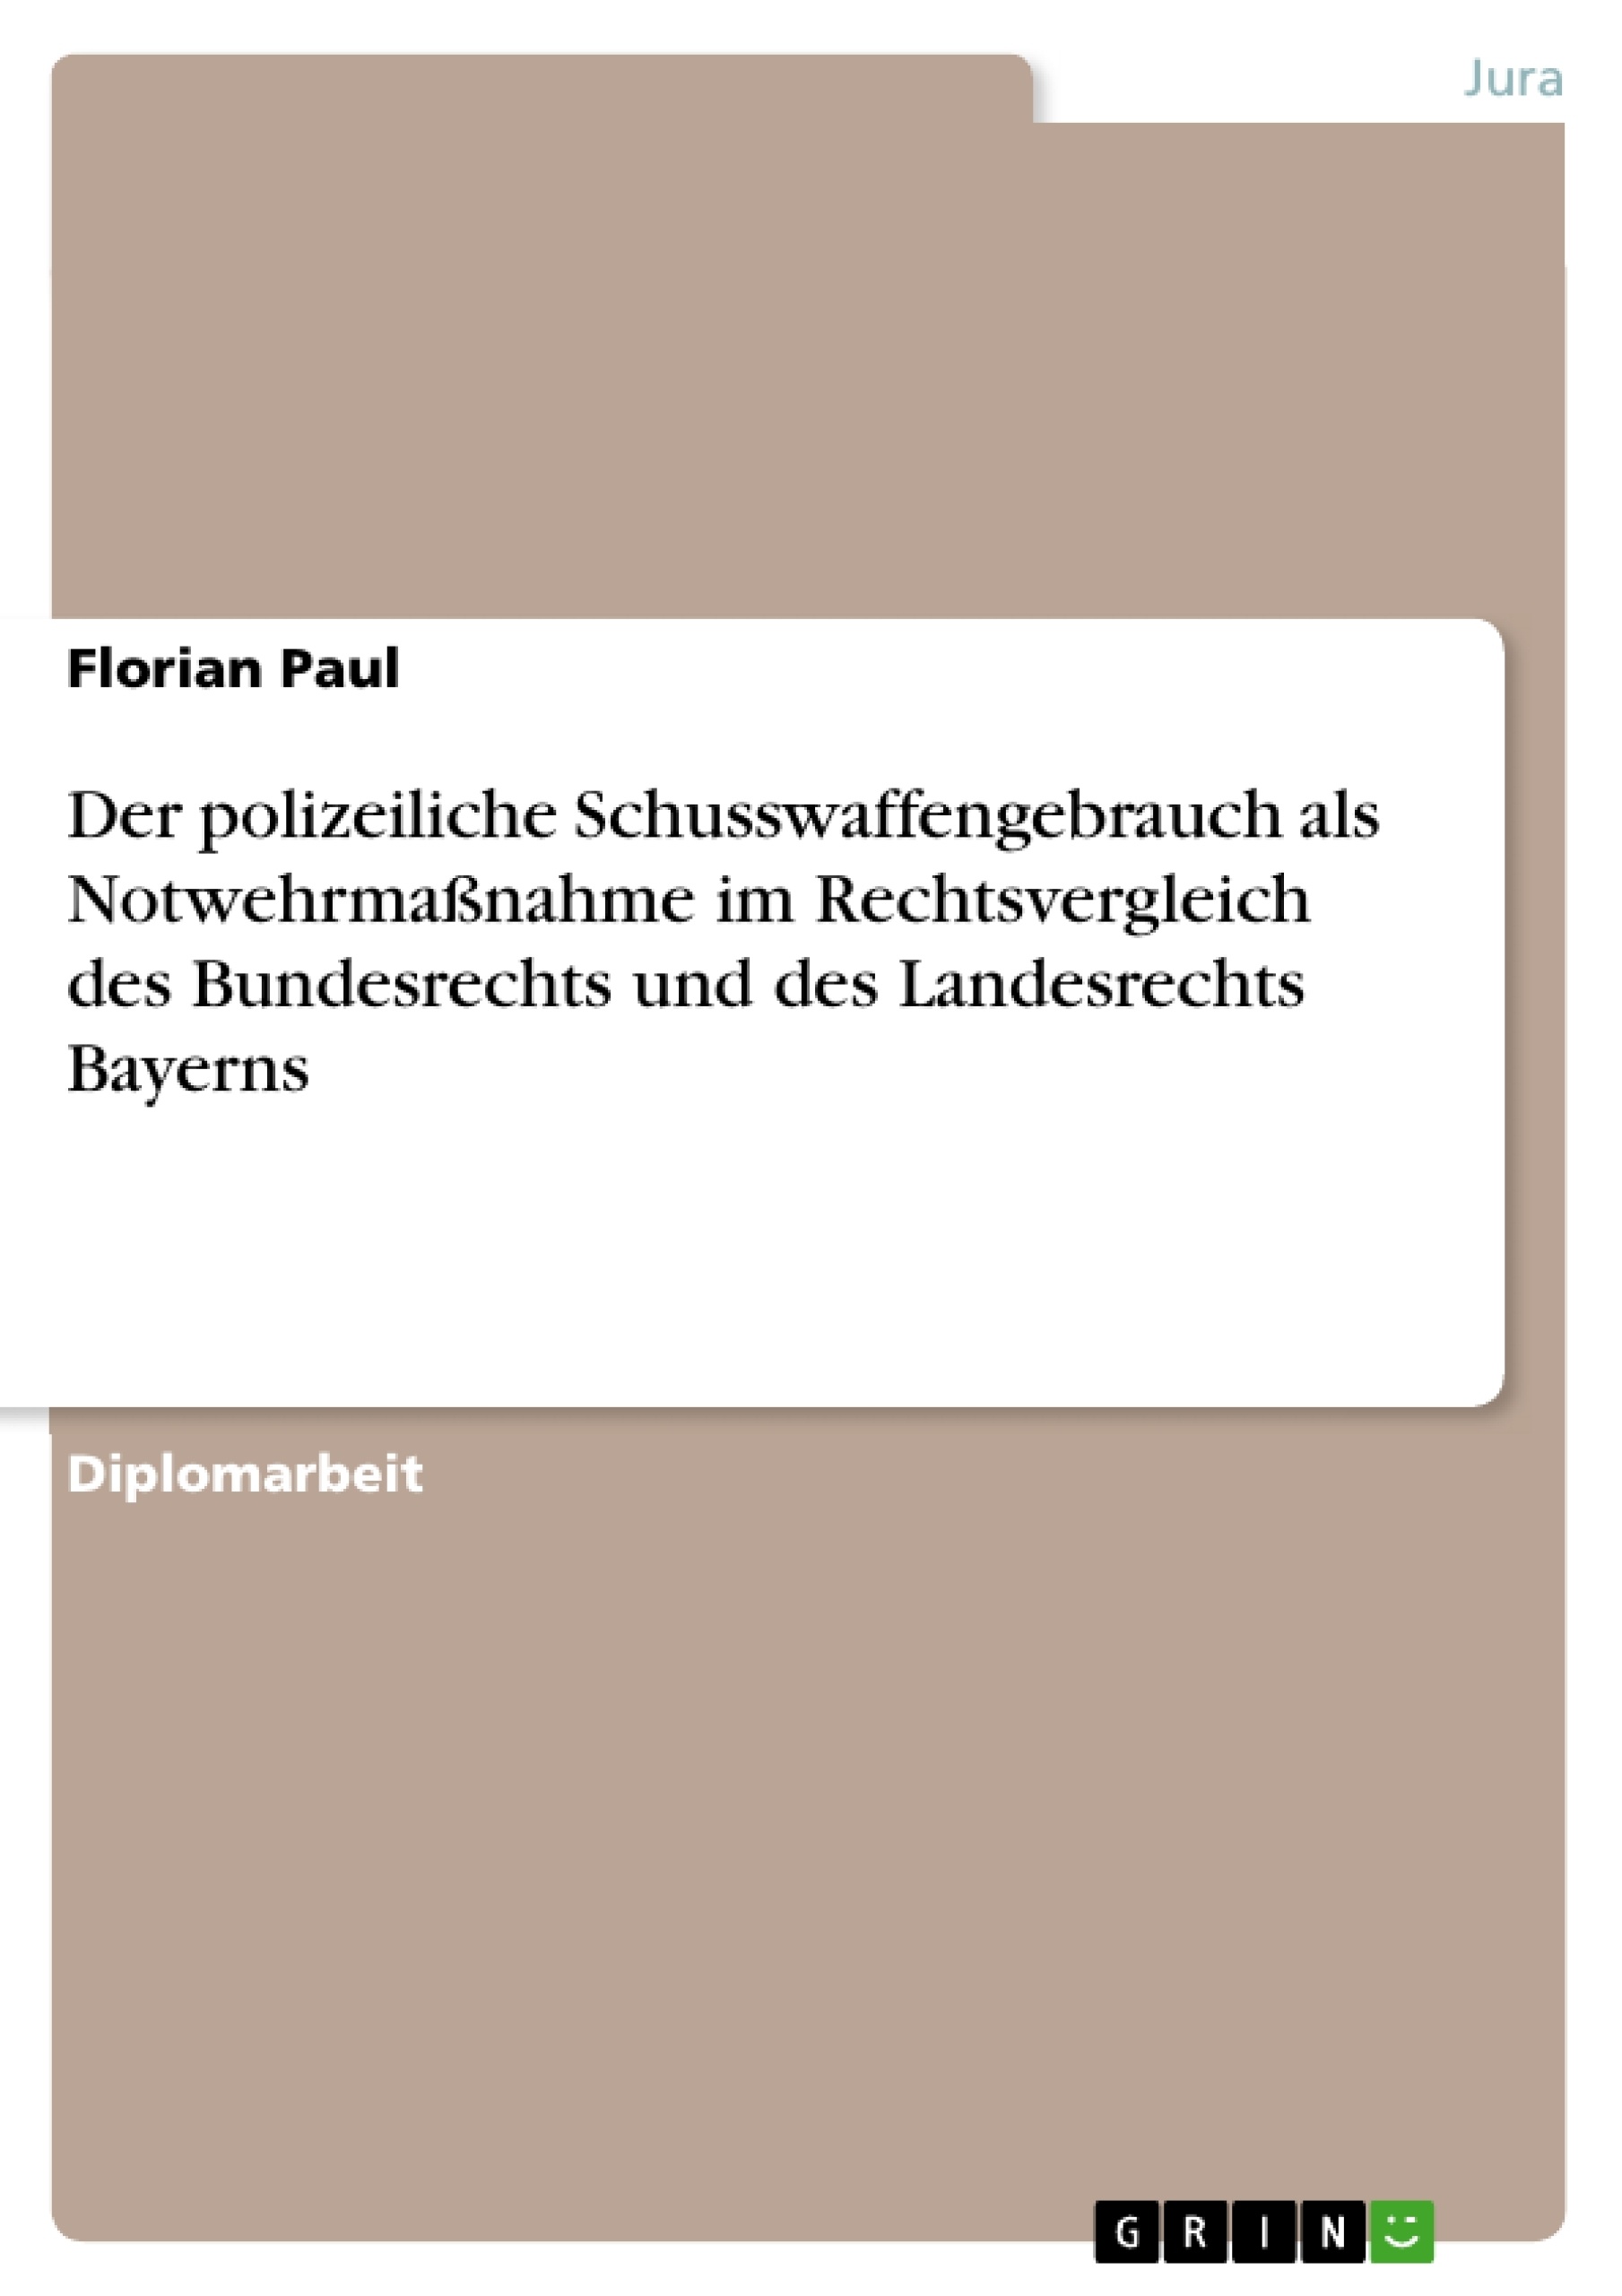 Titre: Der polizeiliche Schusswaffengebrauch als Notwehrmaßnahme im Rechtsvergleich des Bundesrechts und des Landesrechts Bayerns